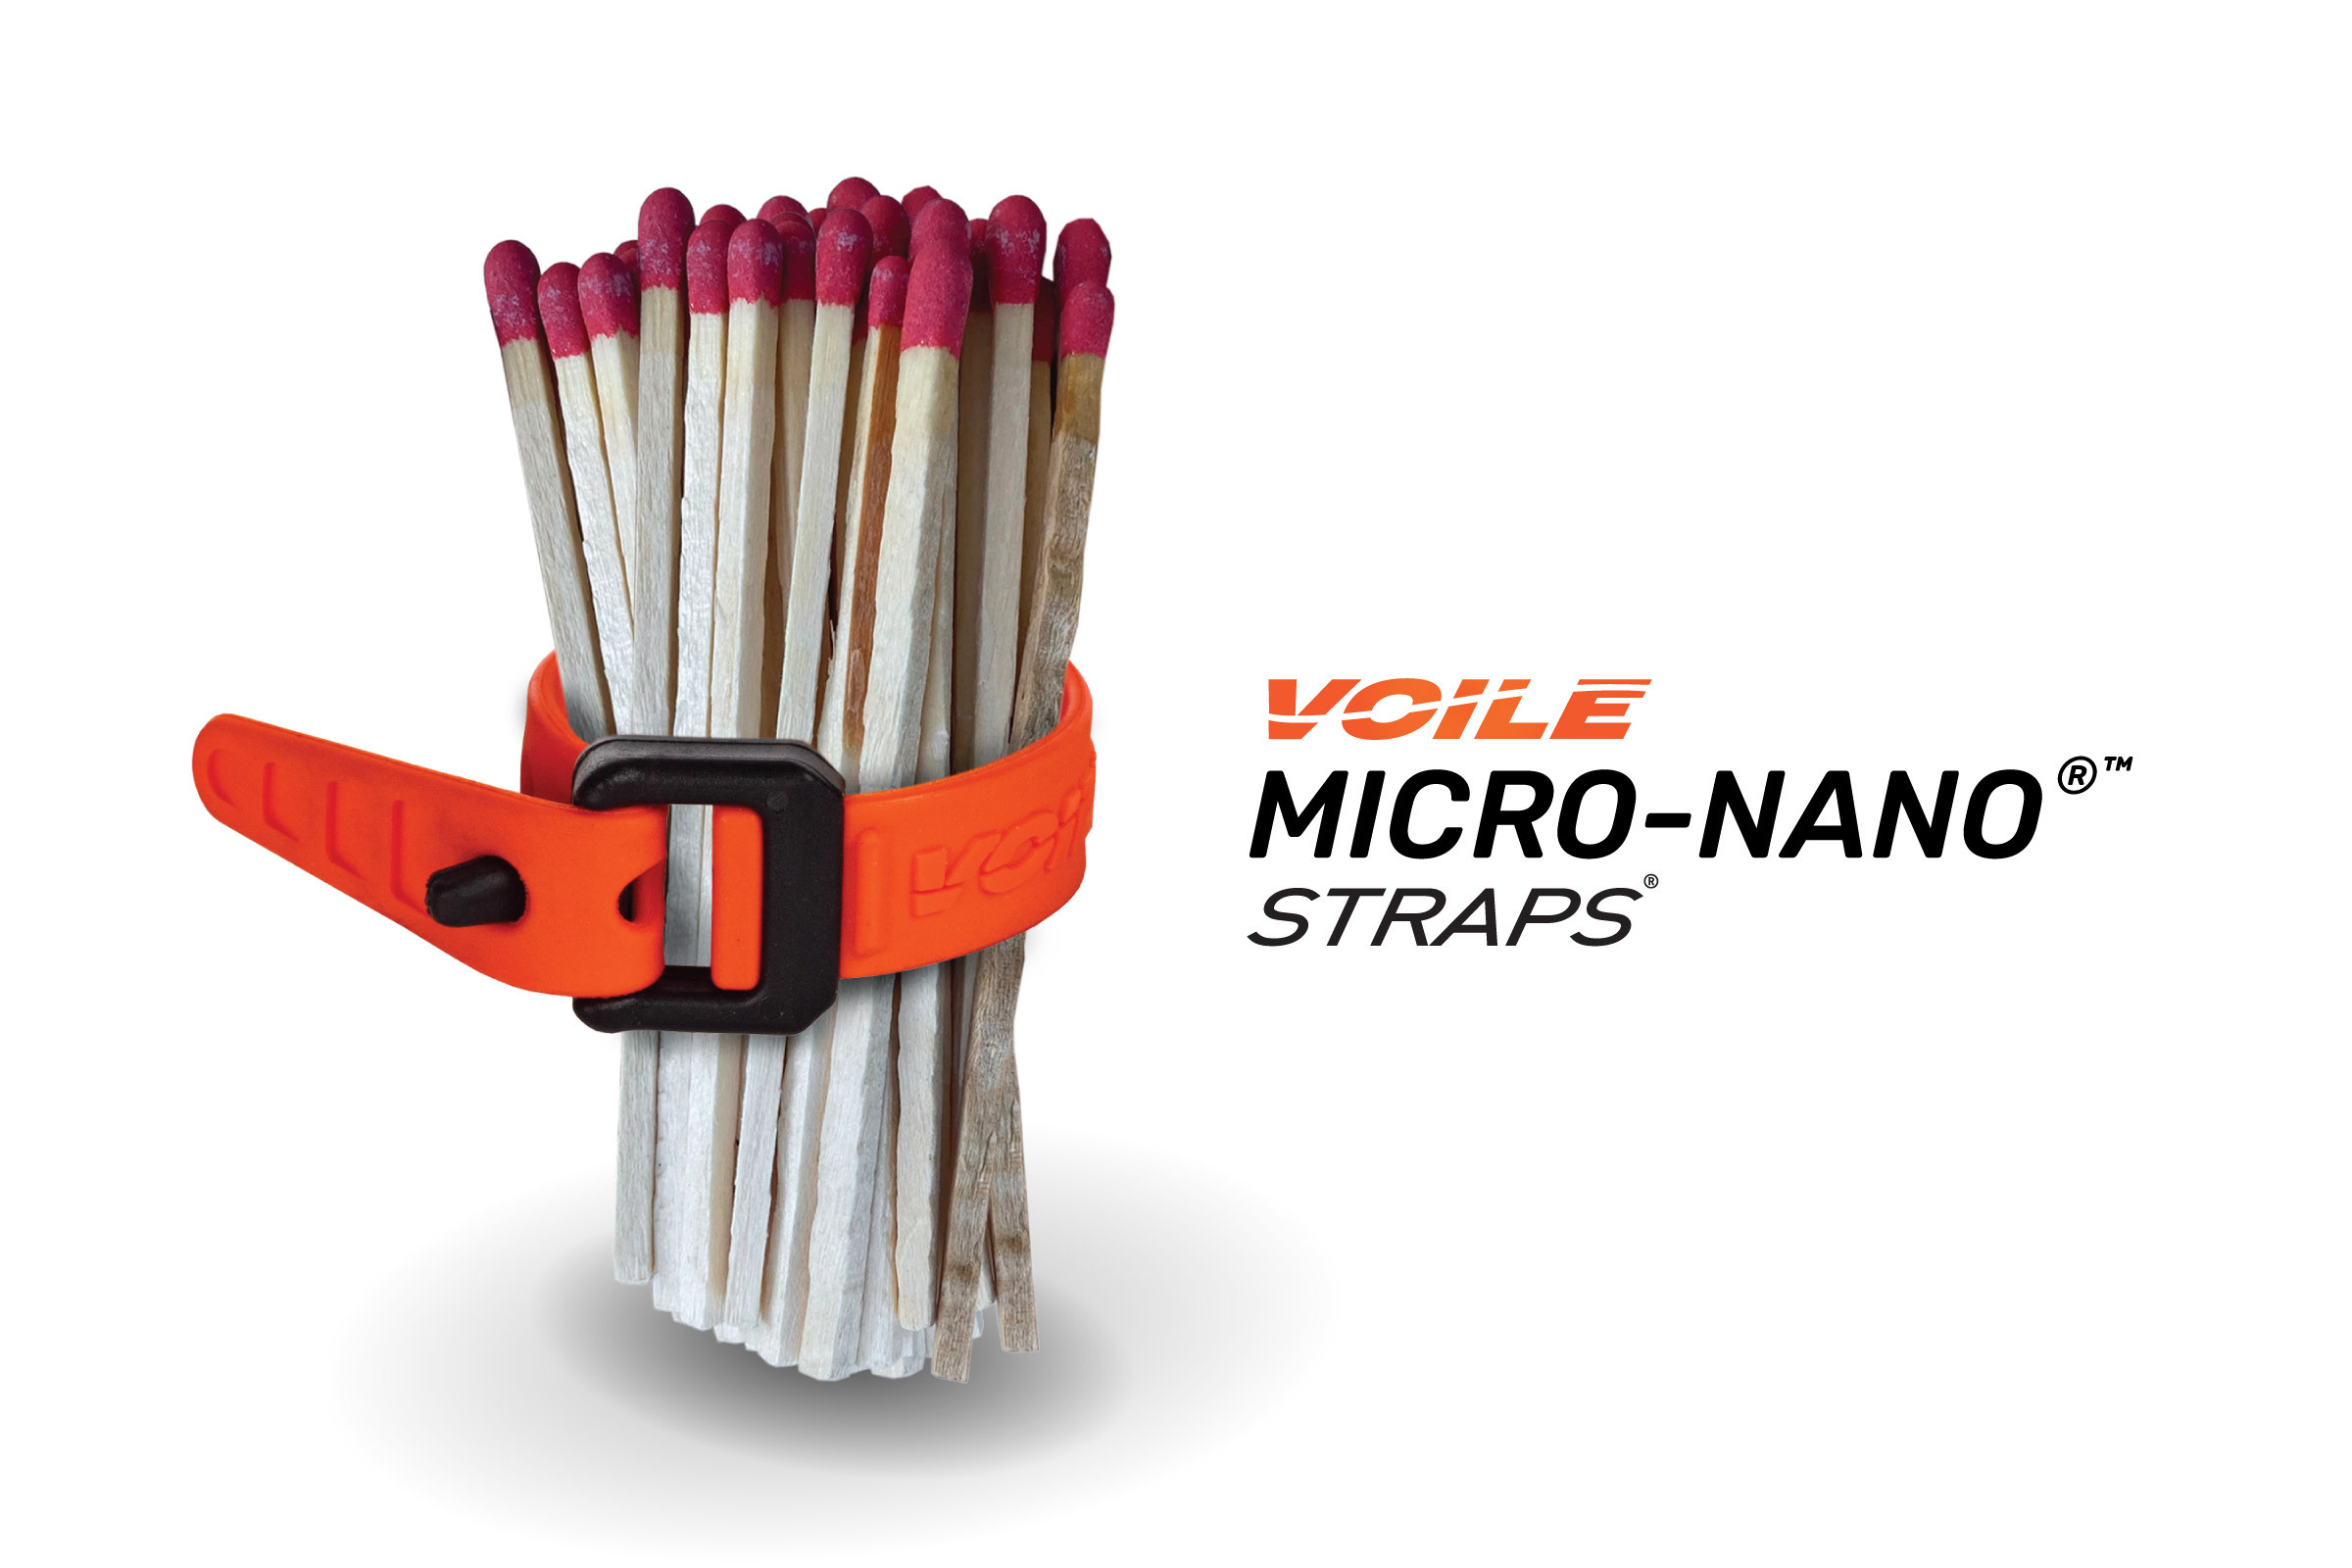 Voile Micro-Nano Strap